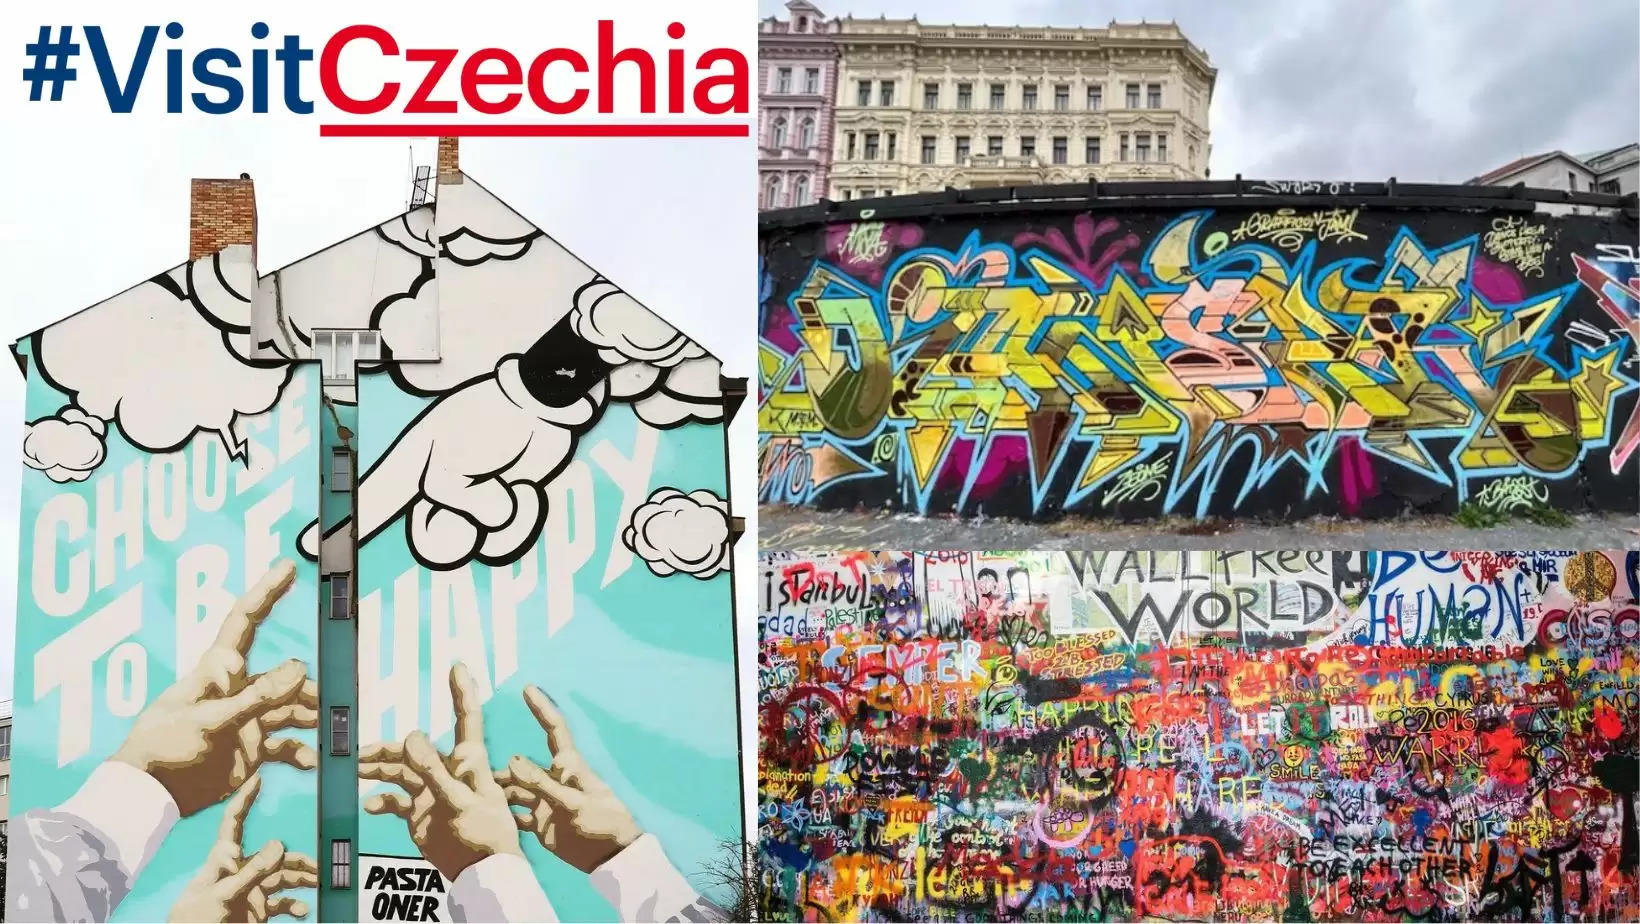 Czechoslovakia Tourism Czech Tourism Street Murals in Czechoslovakia